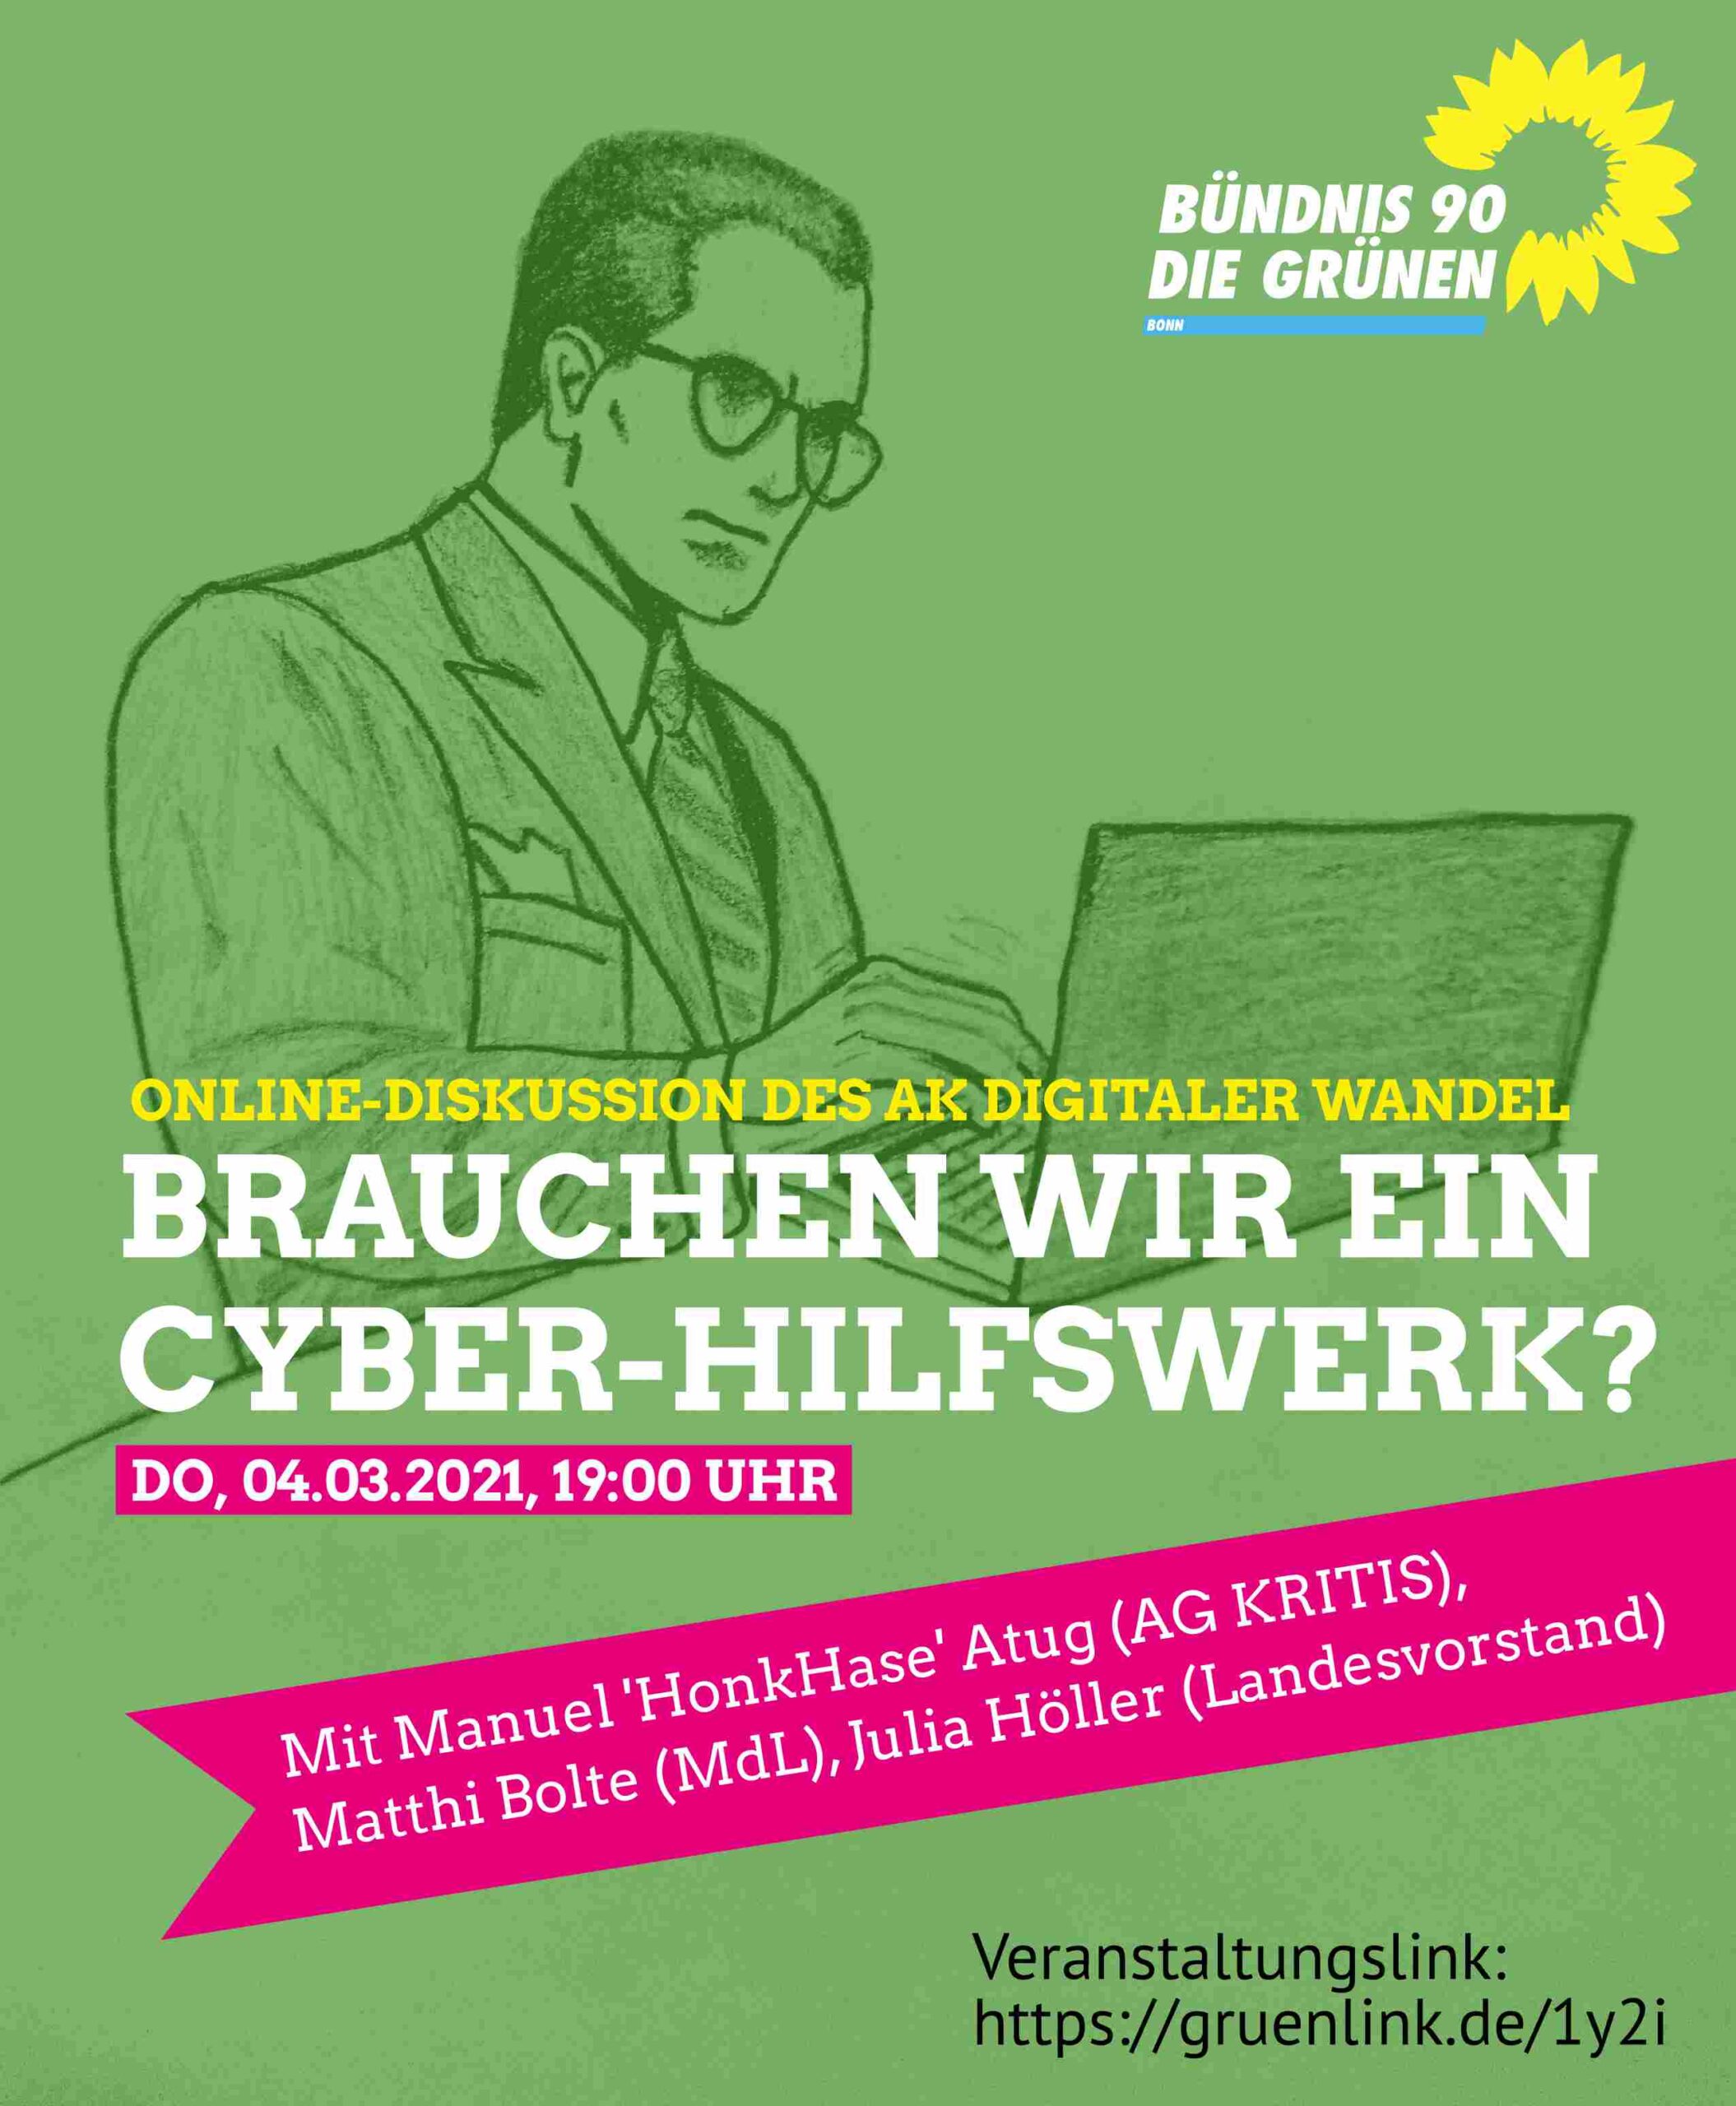 Werbeplakat für die Online-Diskussion "Brauchen wir ein Cyberhilfswerk?" am 4.3.2021 mit Manuel (Hinkhase) Atug, Matthi Bolte und Dr. Julia Höller